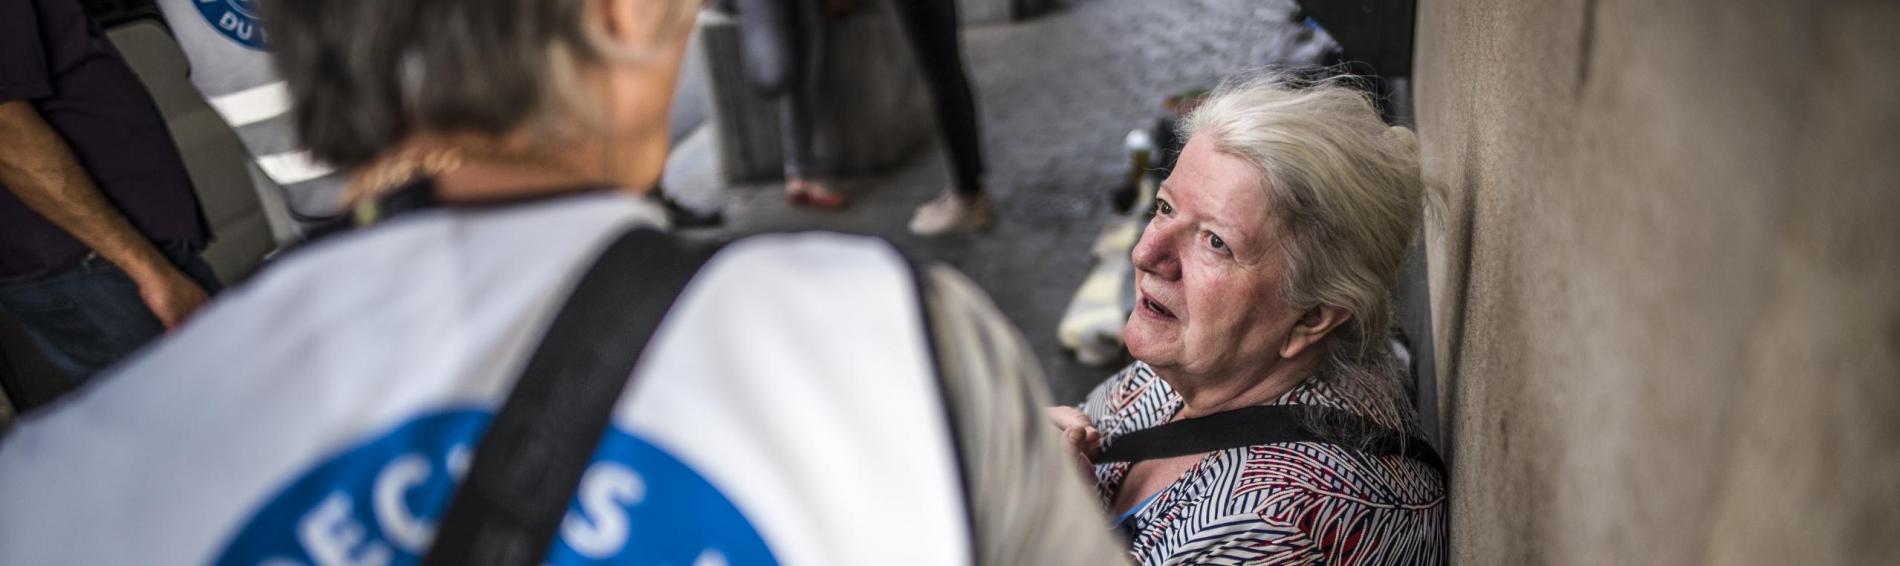 Devant la Gare Centrale de Bruxelles, juste devant le Médibus de Médecins du Monde. Une dame aux longs cheveux blancs, dressés en chignon, est assise sur un banc avec une bénévole de Médecins du Monde, vue de dos.